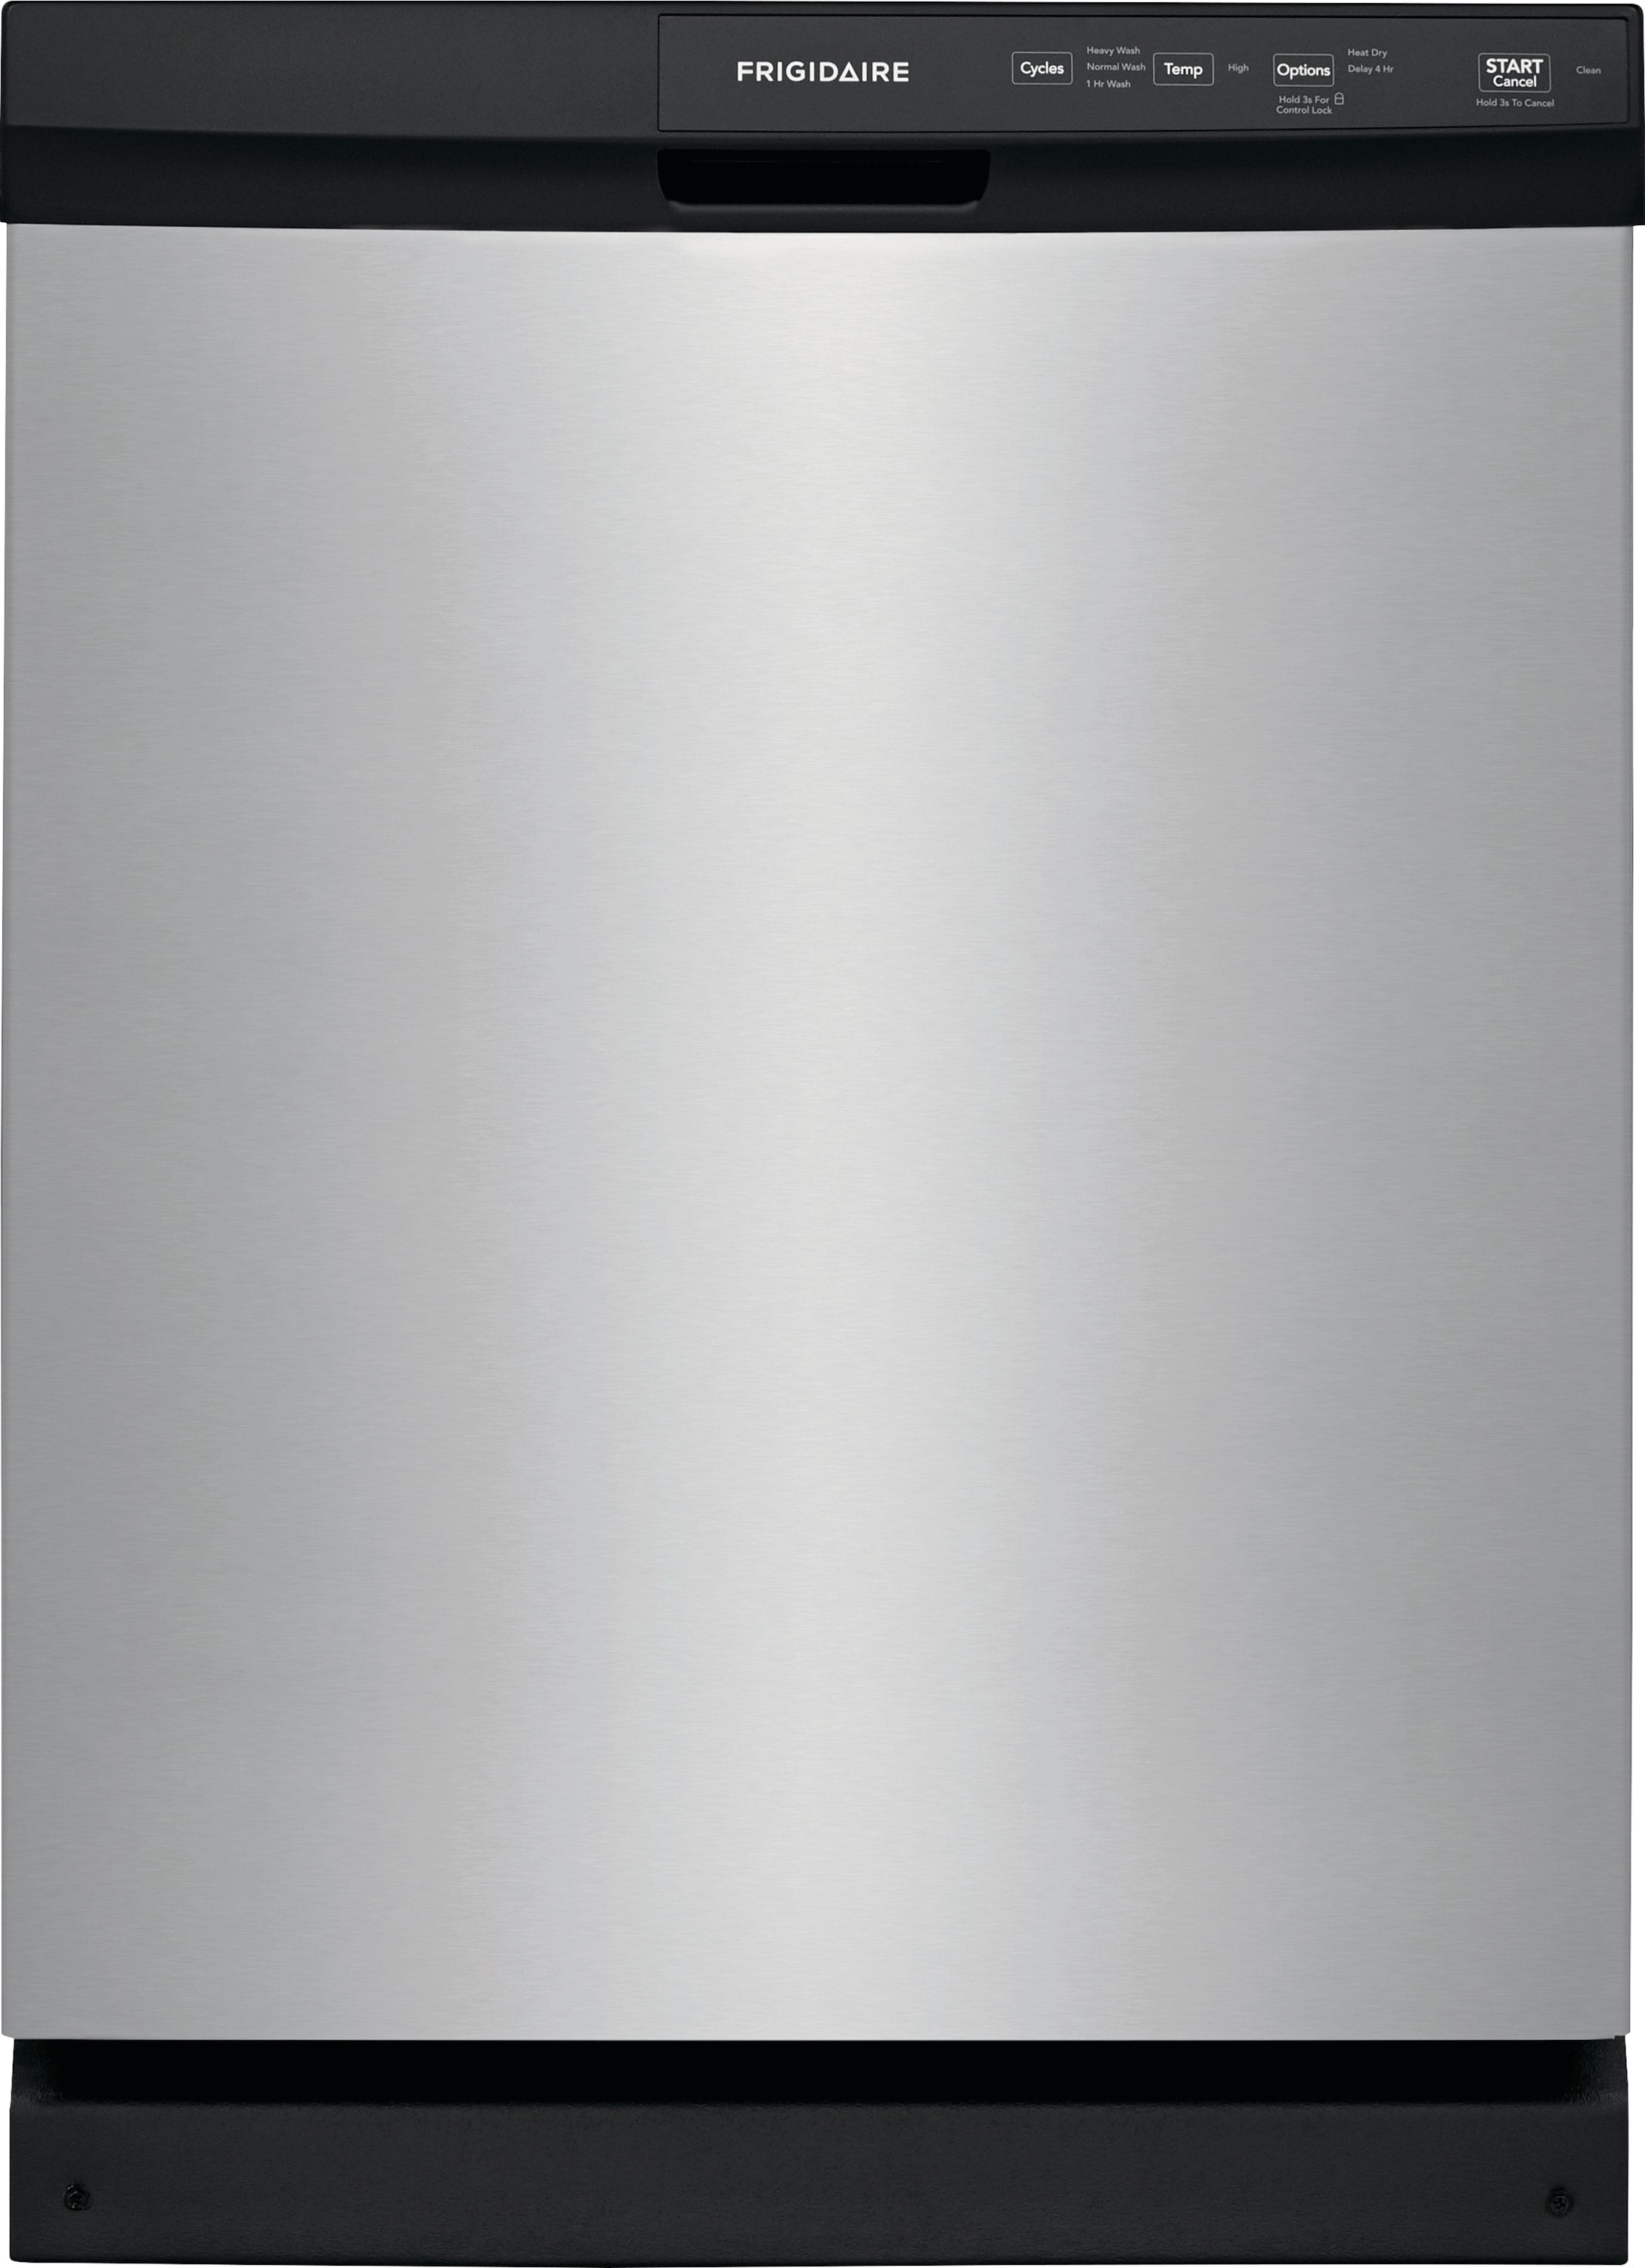 Frigidaire 24-inch Built-In Dishwasher FFCD2418UW